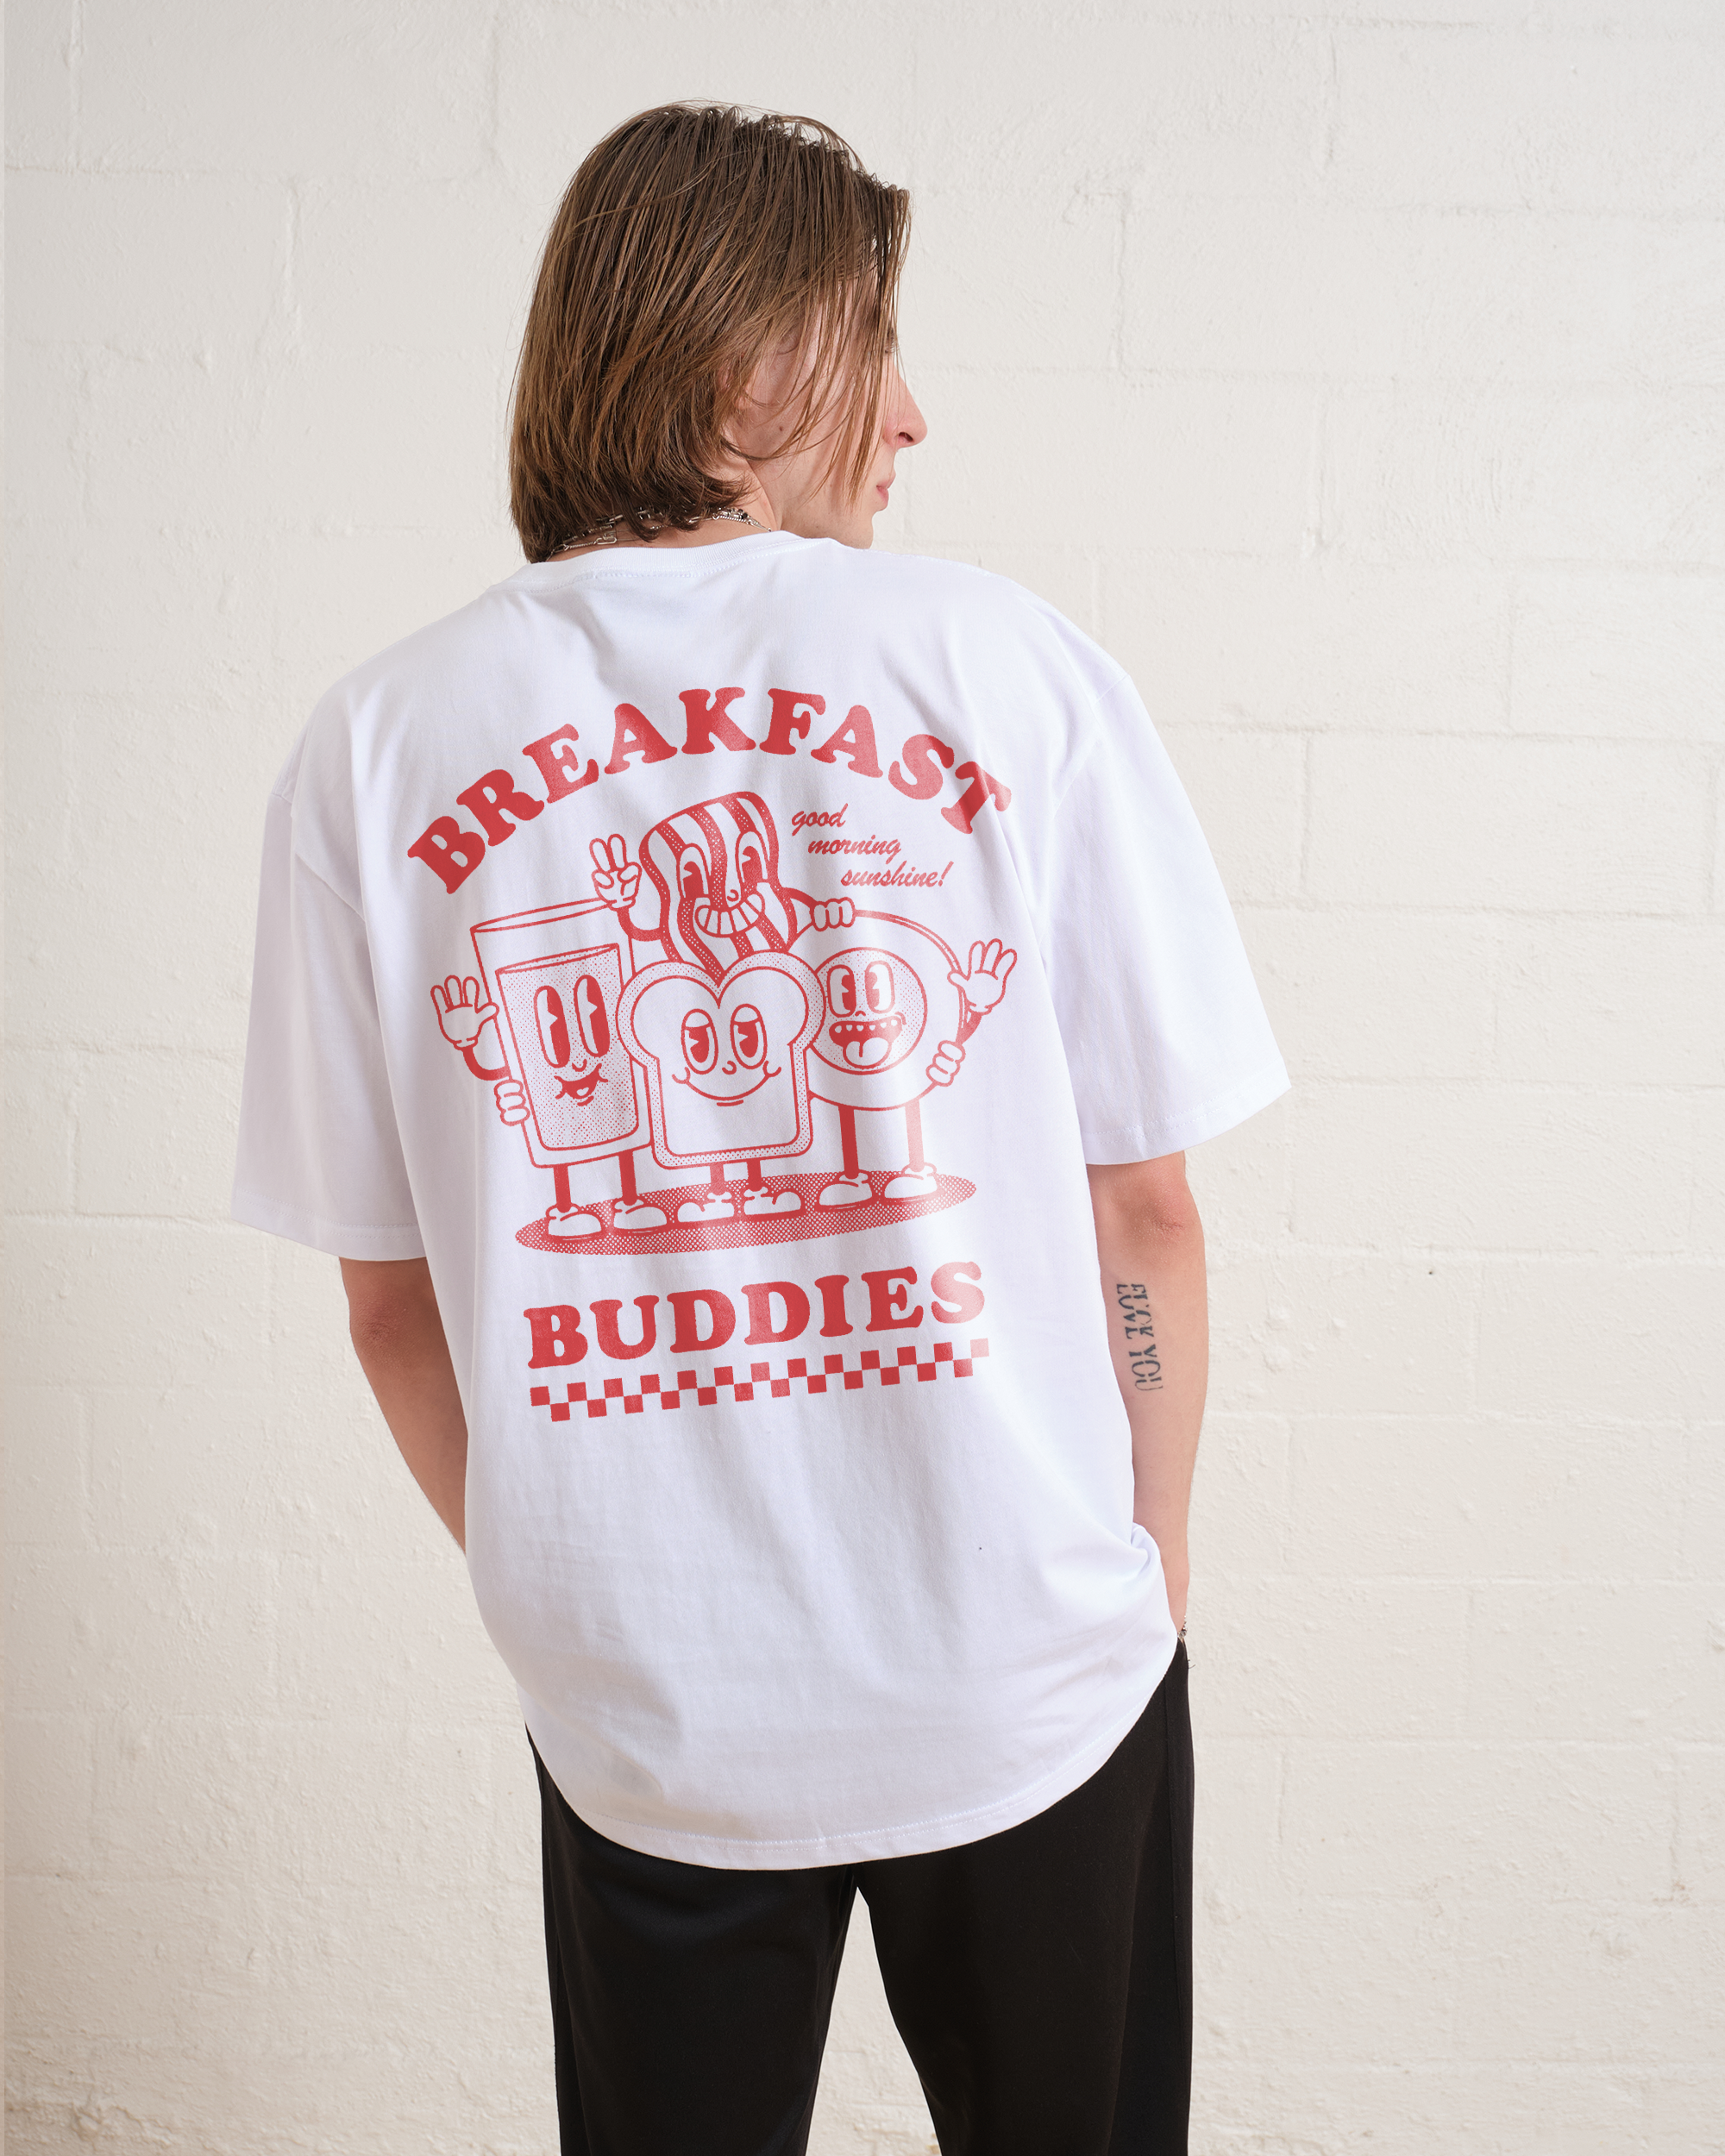 Breakfast Buddies T-Shirt